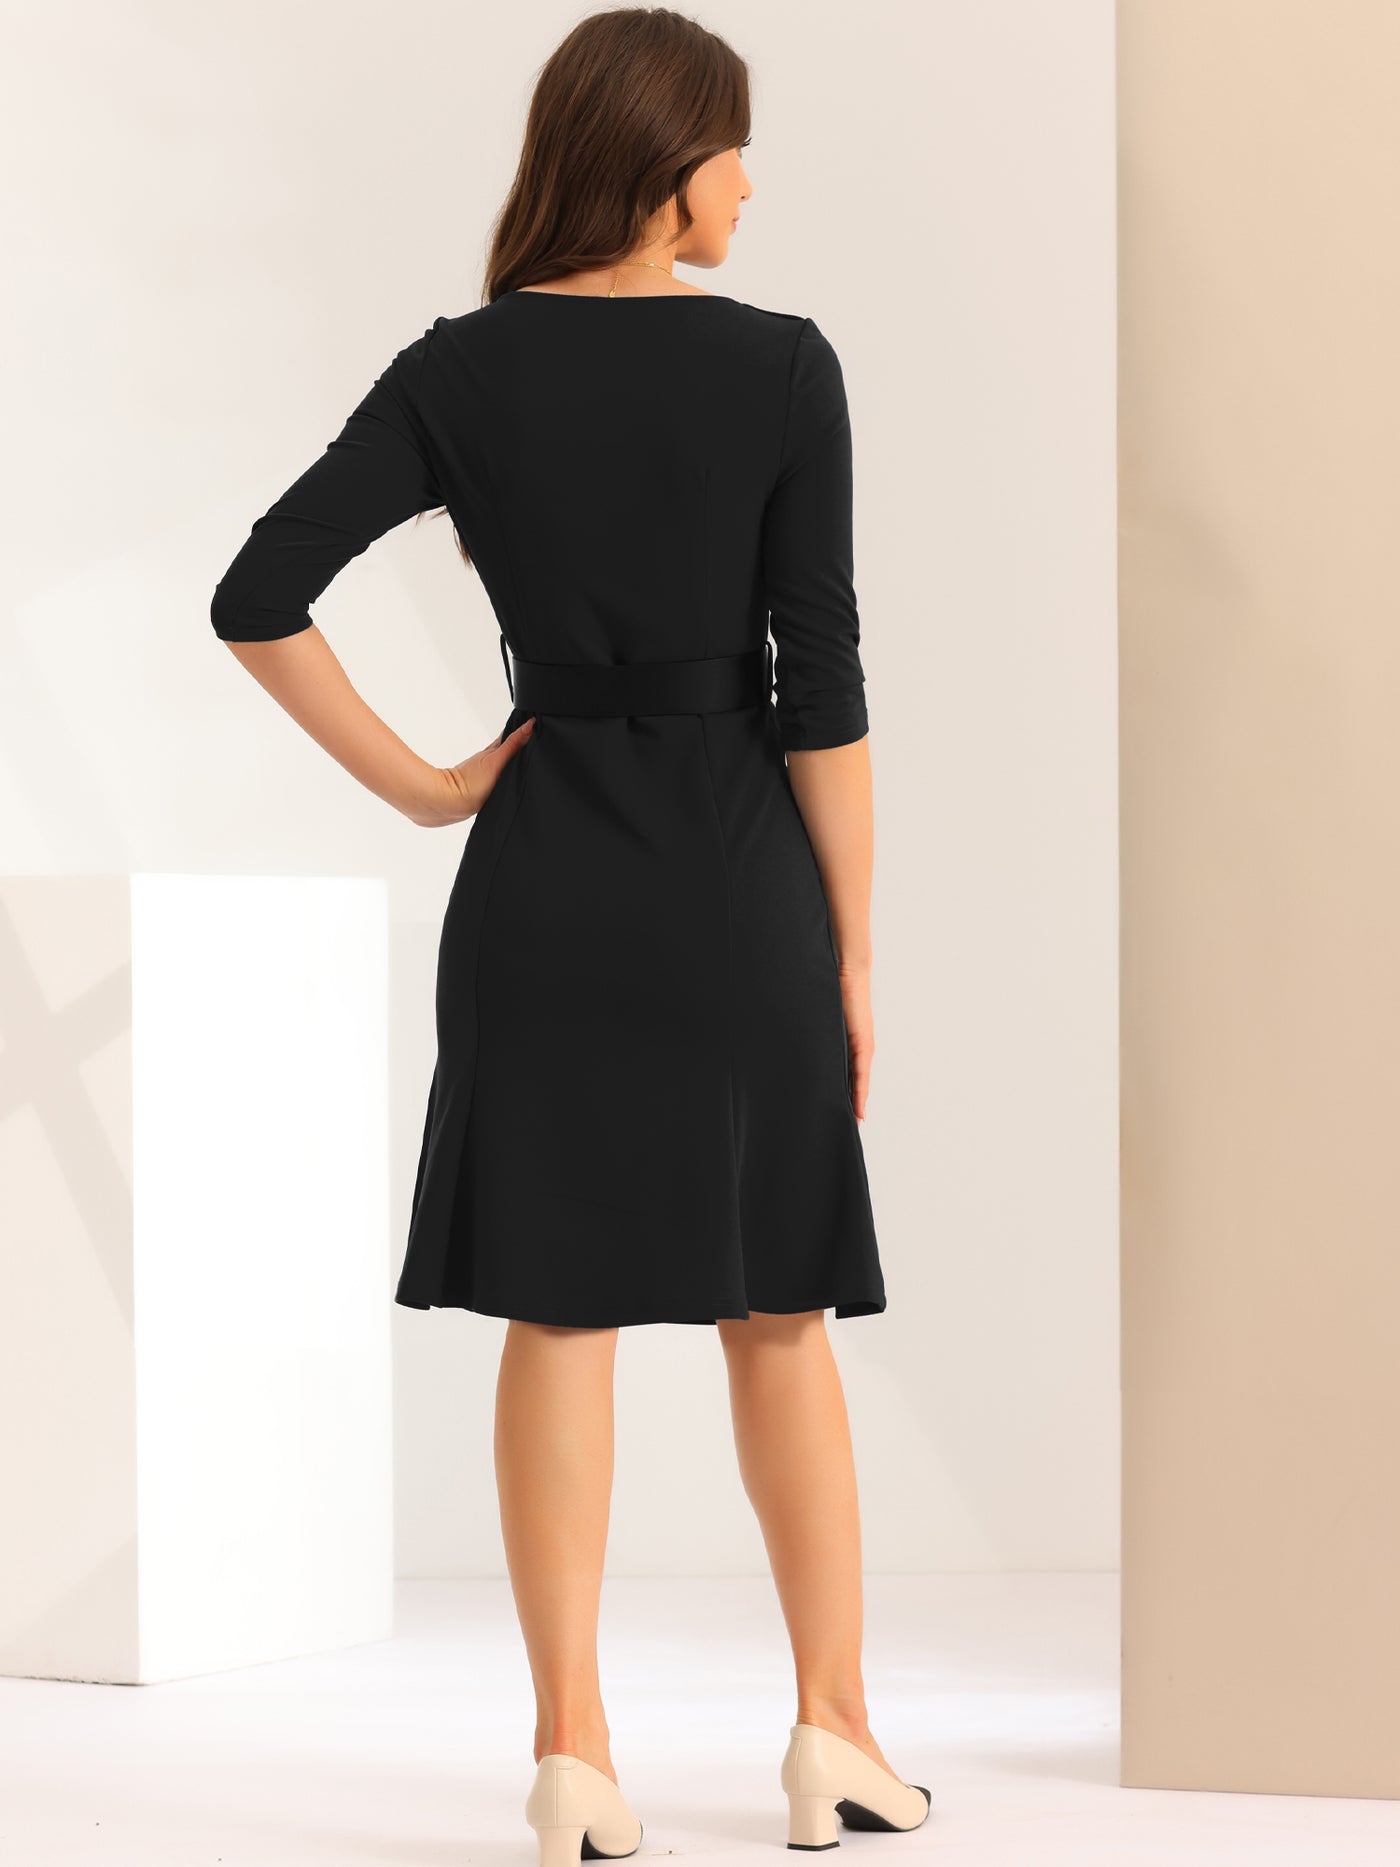 Allegra K Work Office Dress for Women's Square Neck Knee Length Belted Dress